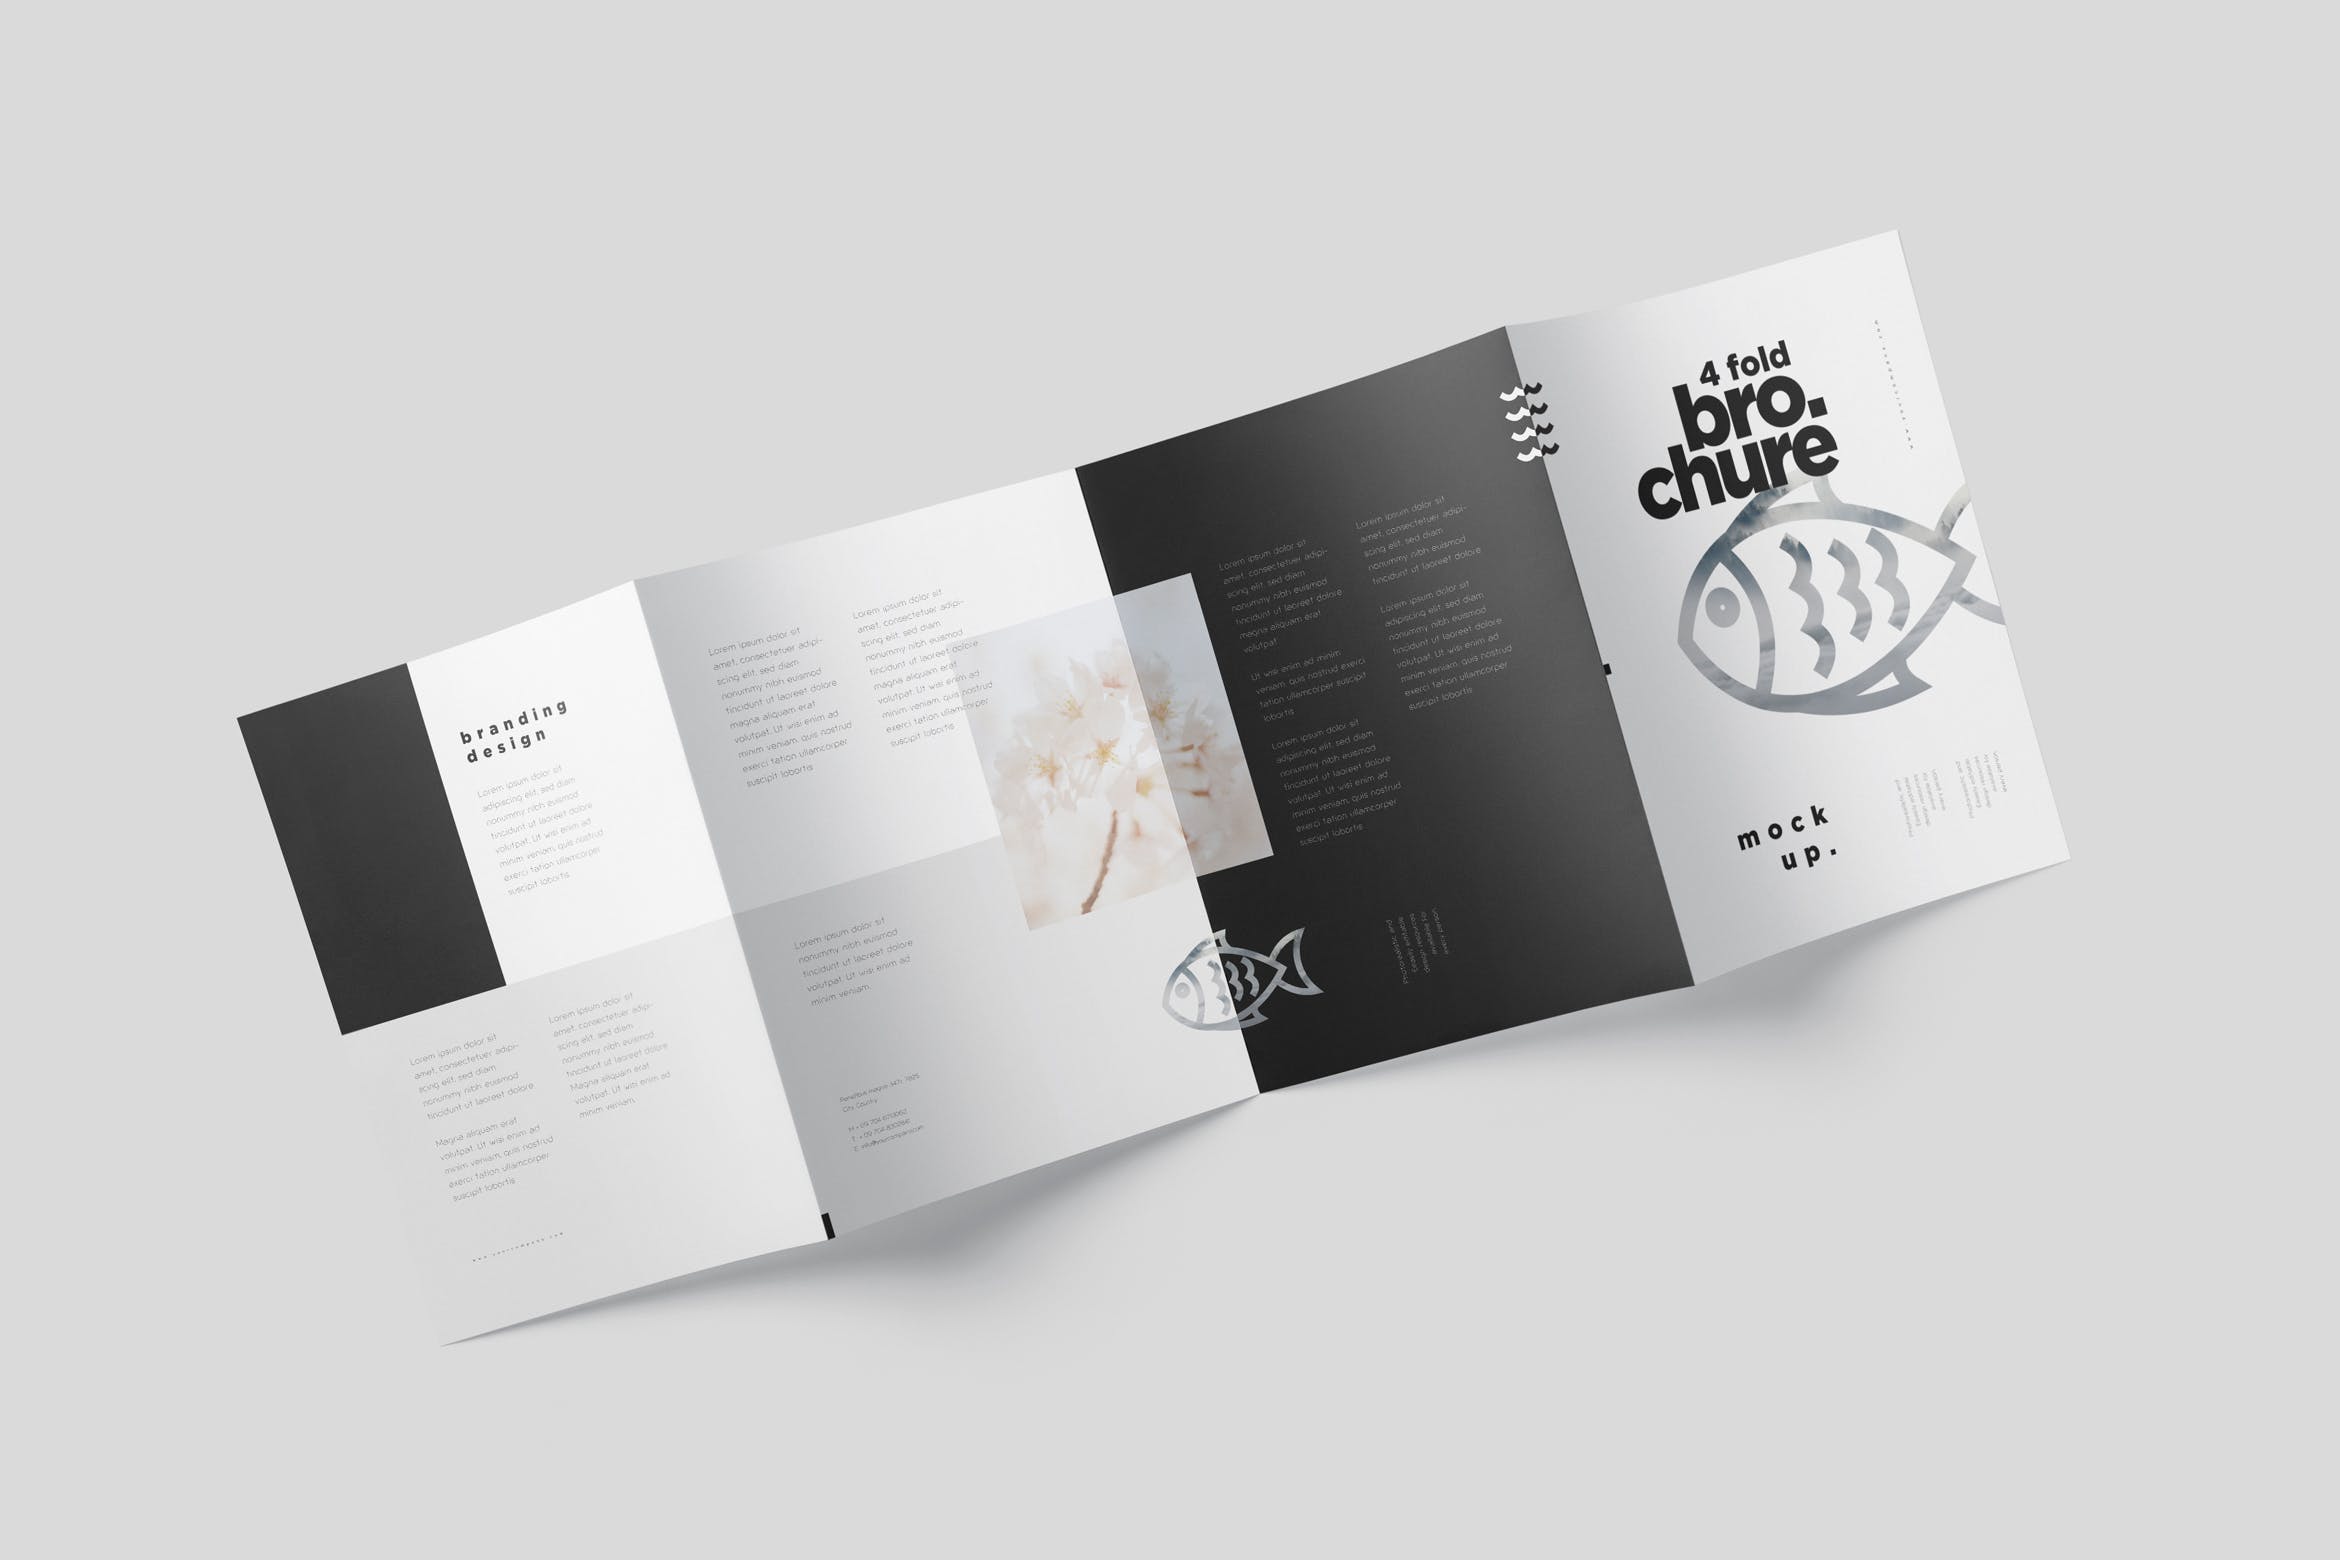 多尺寸四折页宣传册印刷效果图样机素材模板4 Fold Brochure Mockup Set Din A5 A6 第一素材网